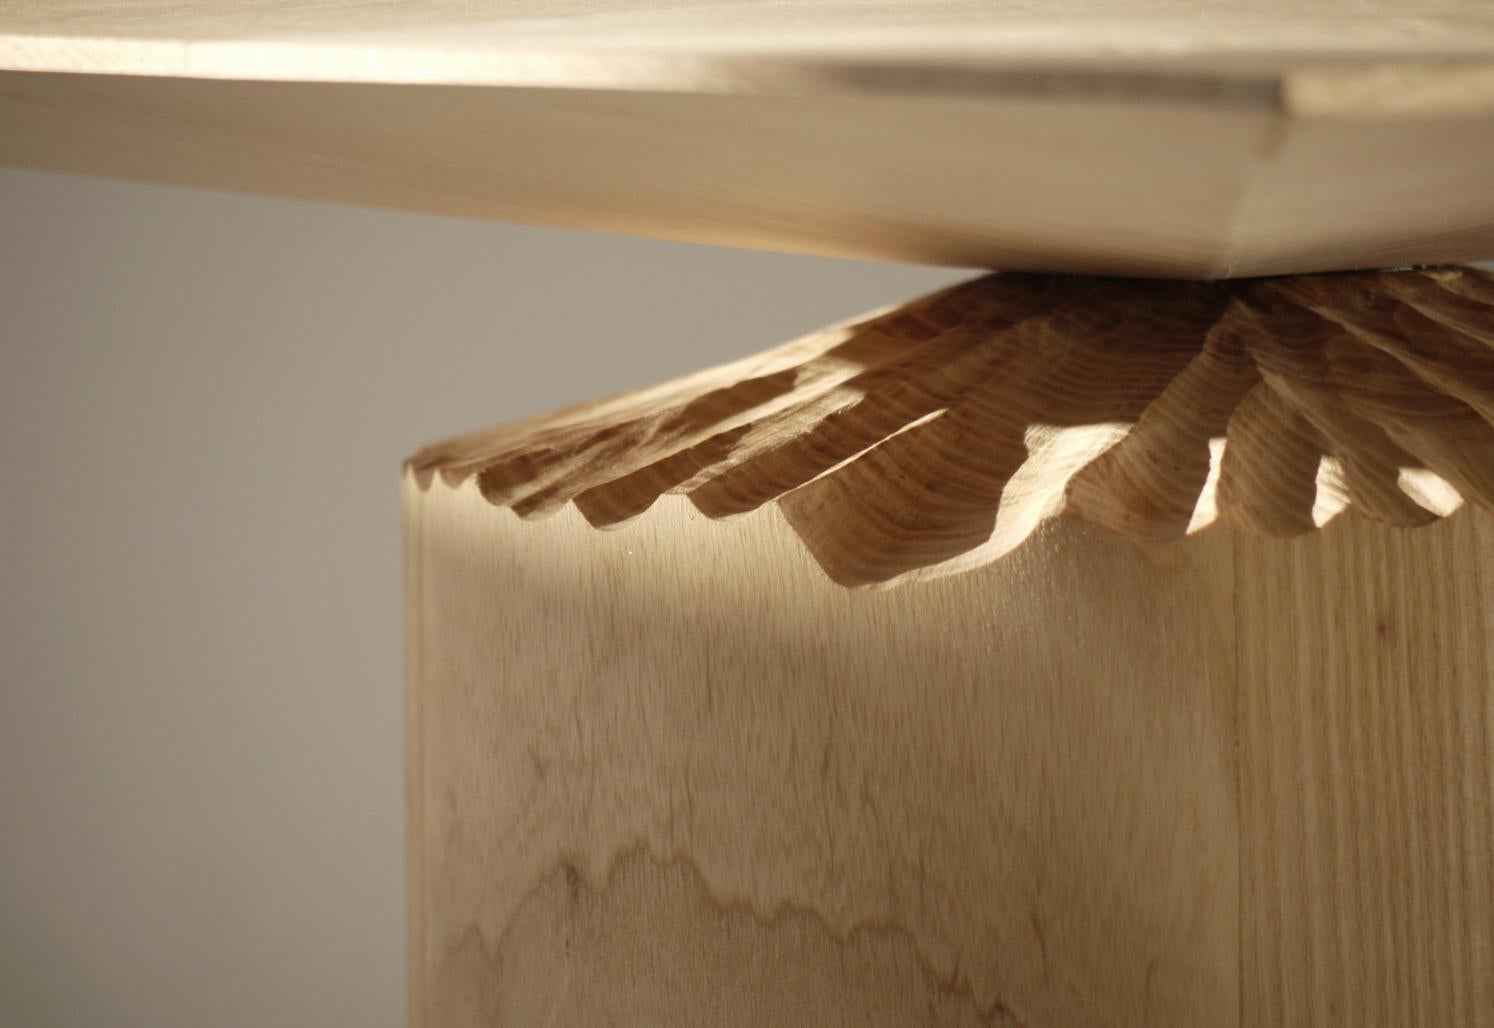 Organic Modern Hand-Sculpted Ash Table by Sanna Völker